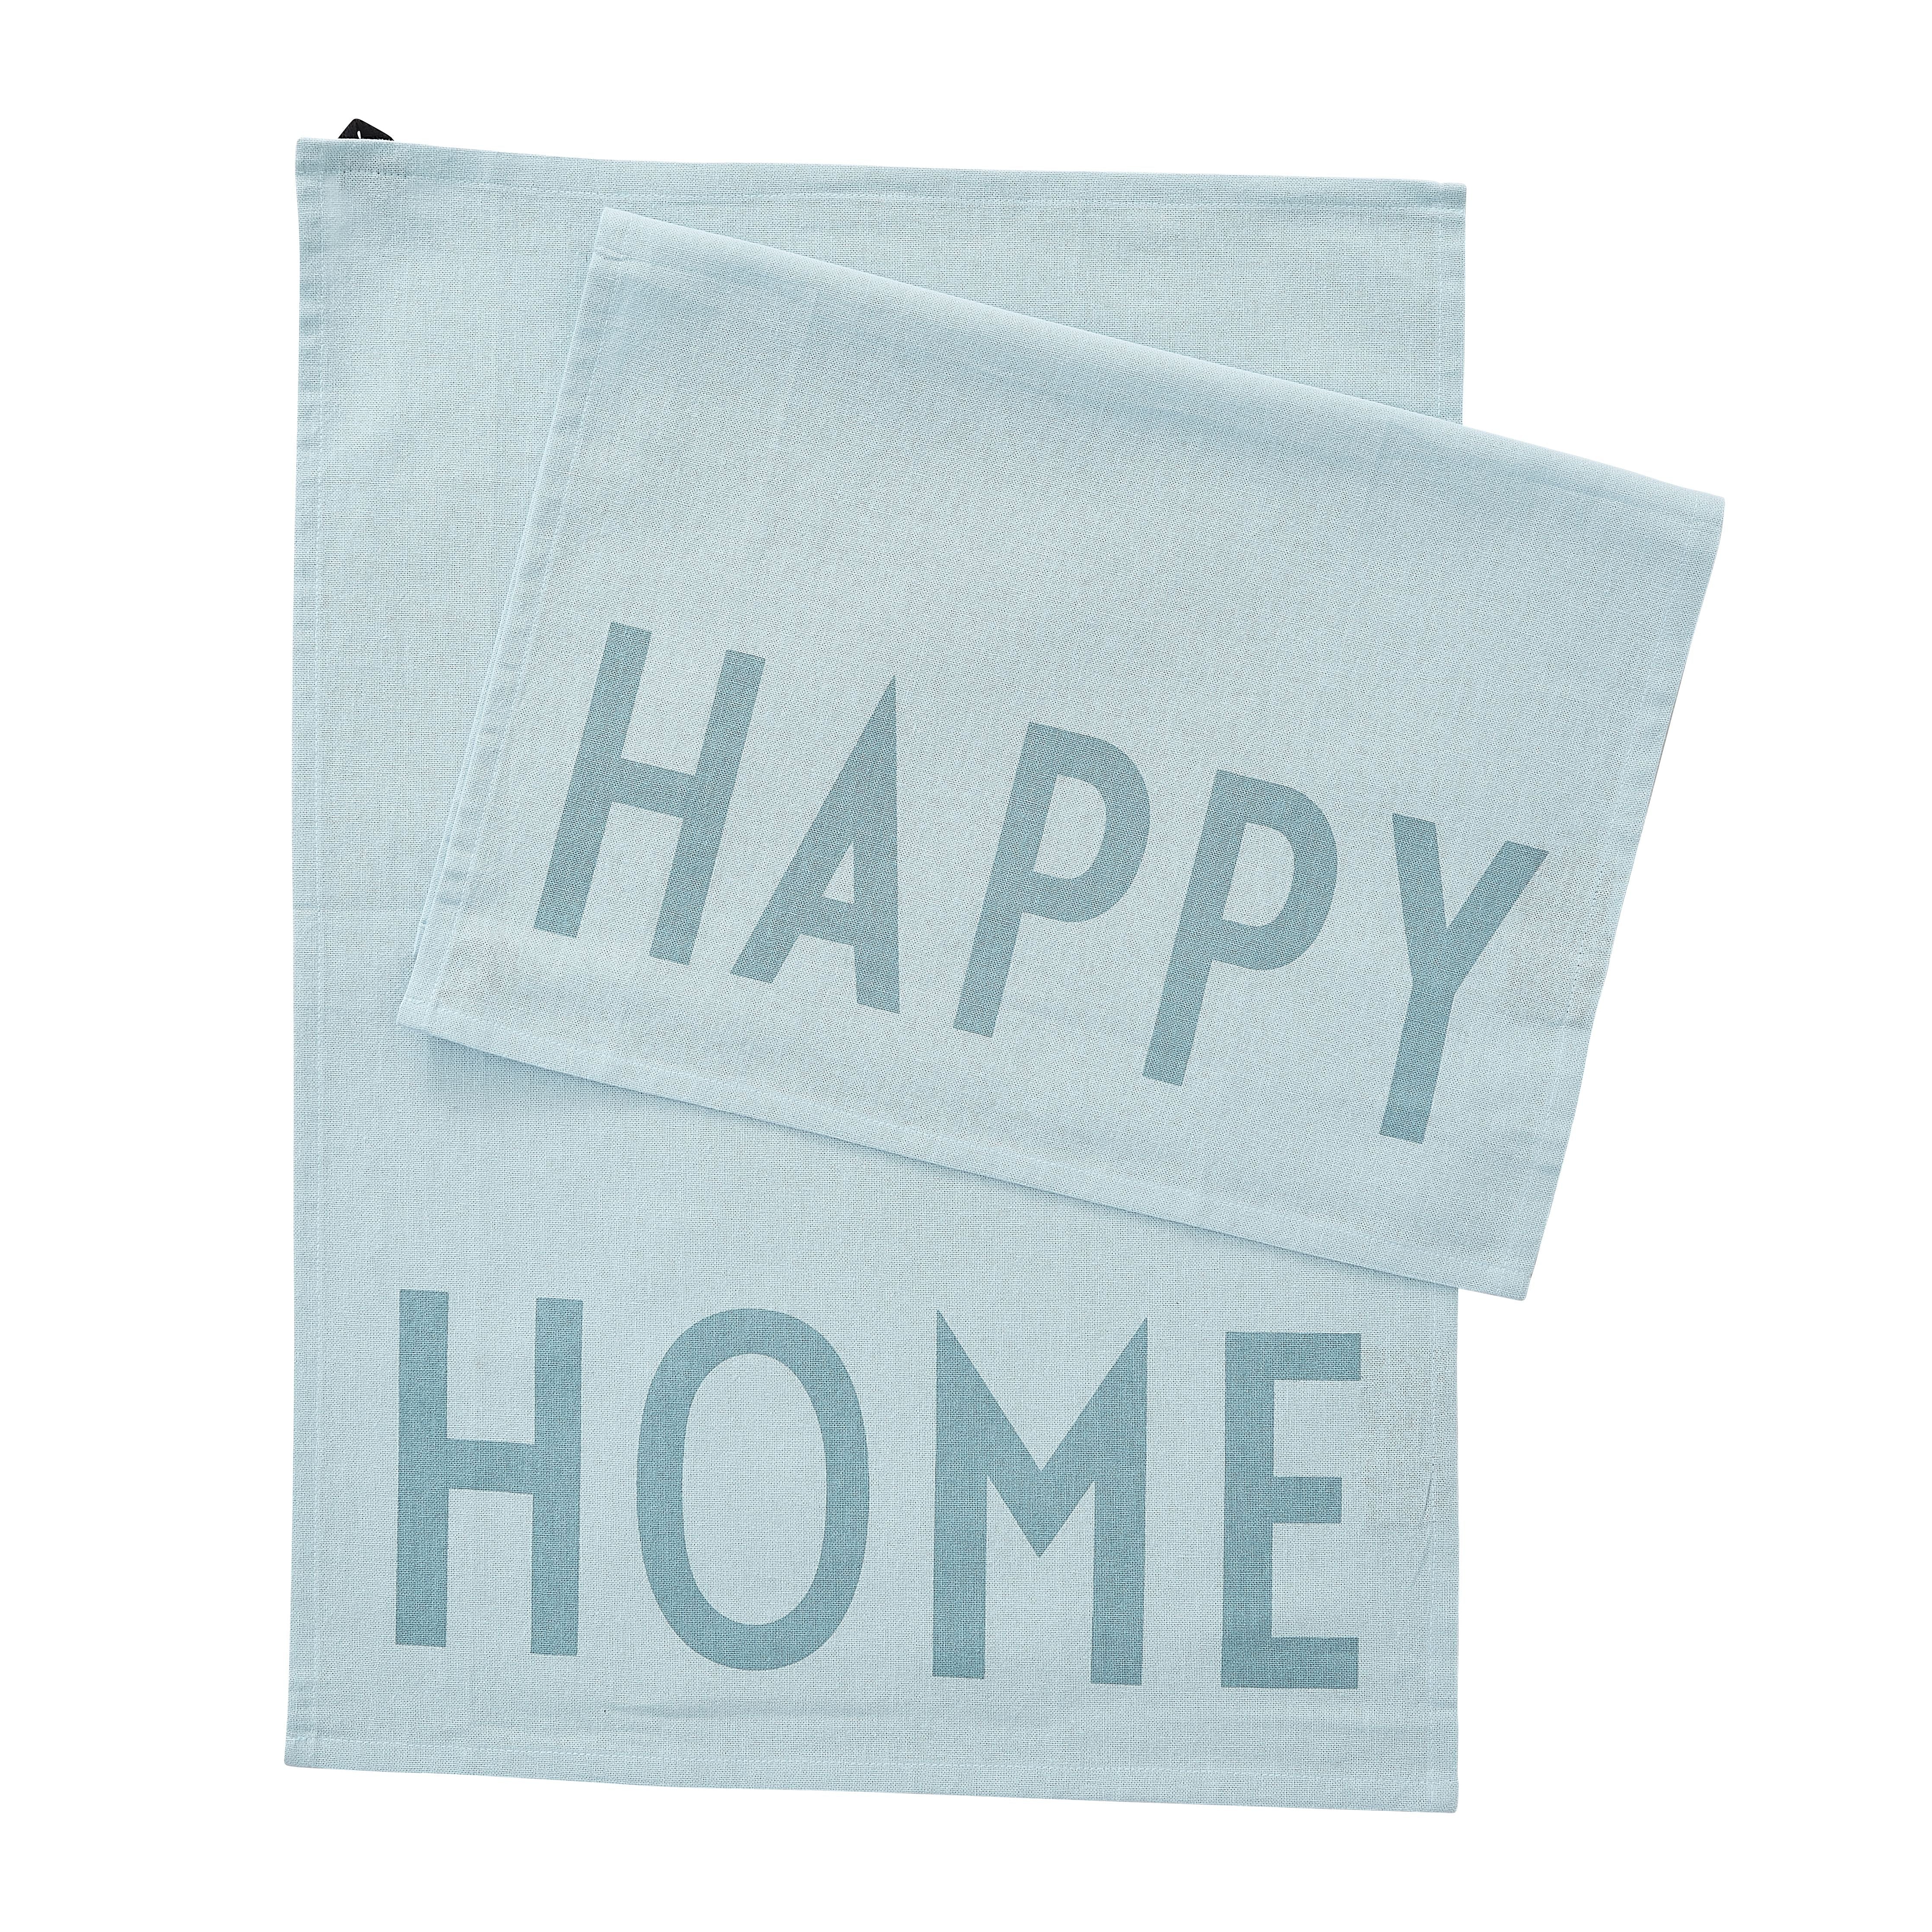 Letras de diseño Hogar favorita de toallas, azul claro